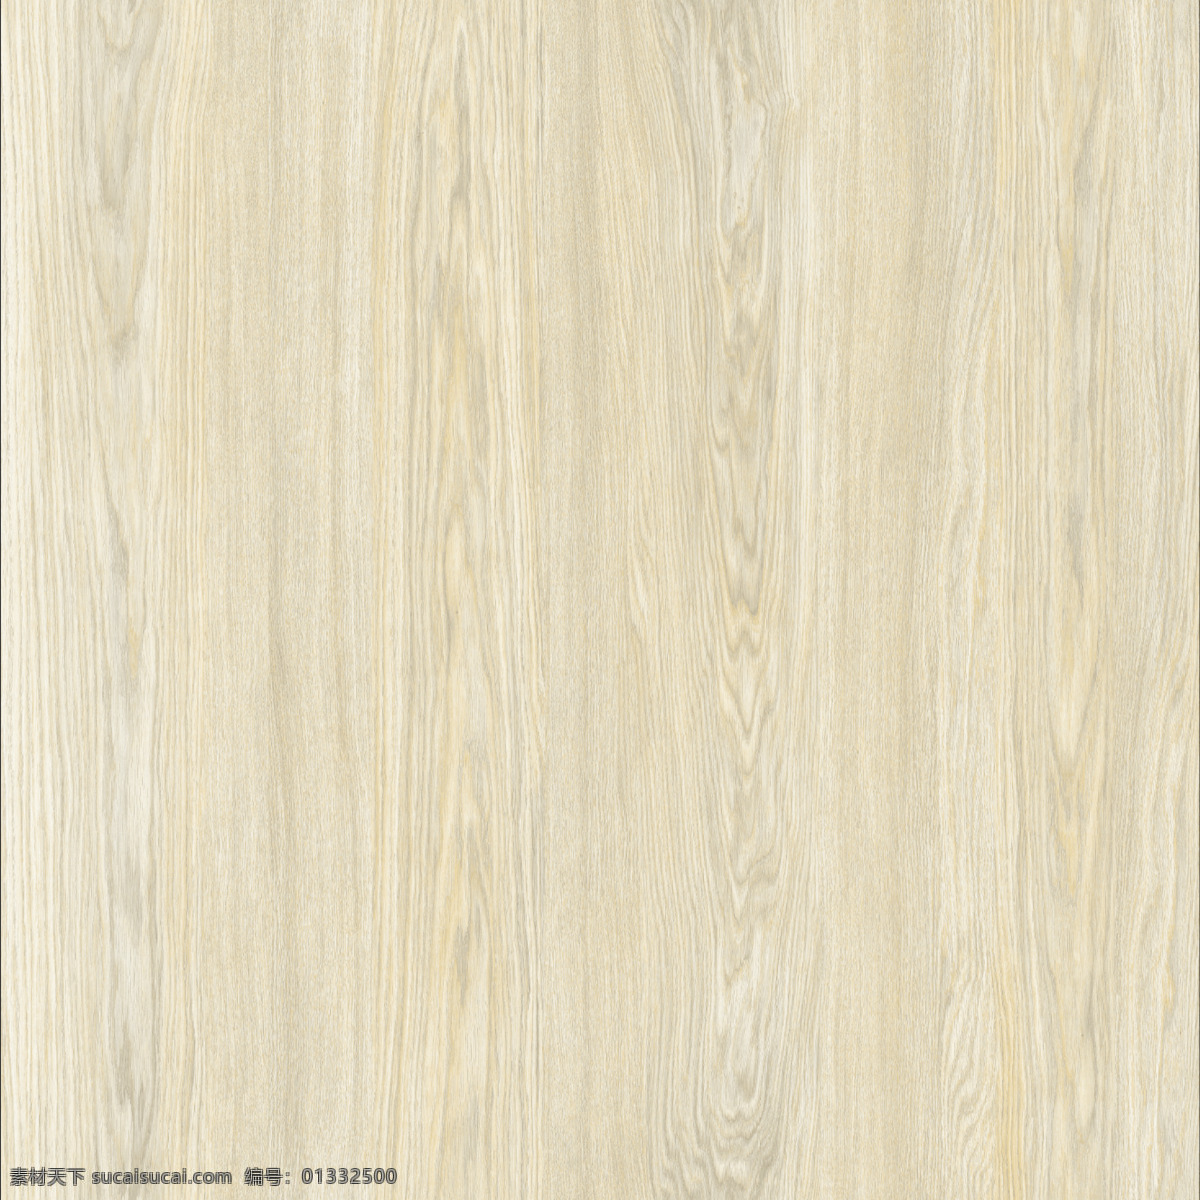 木纹 装饰 贴图 木头 仿古木纹 木地板 木纹肌理 原始木材